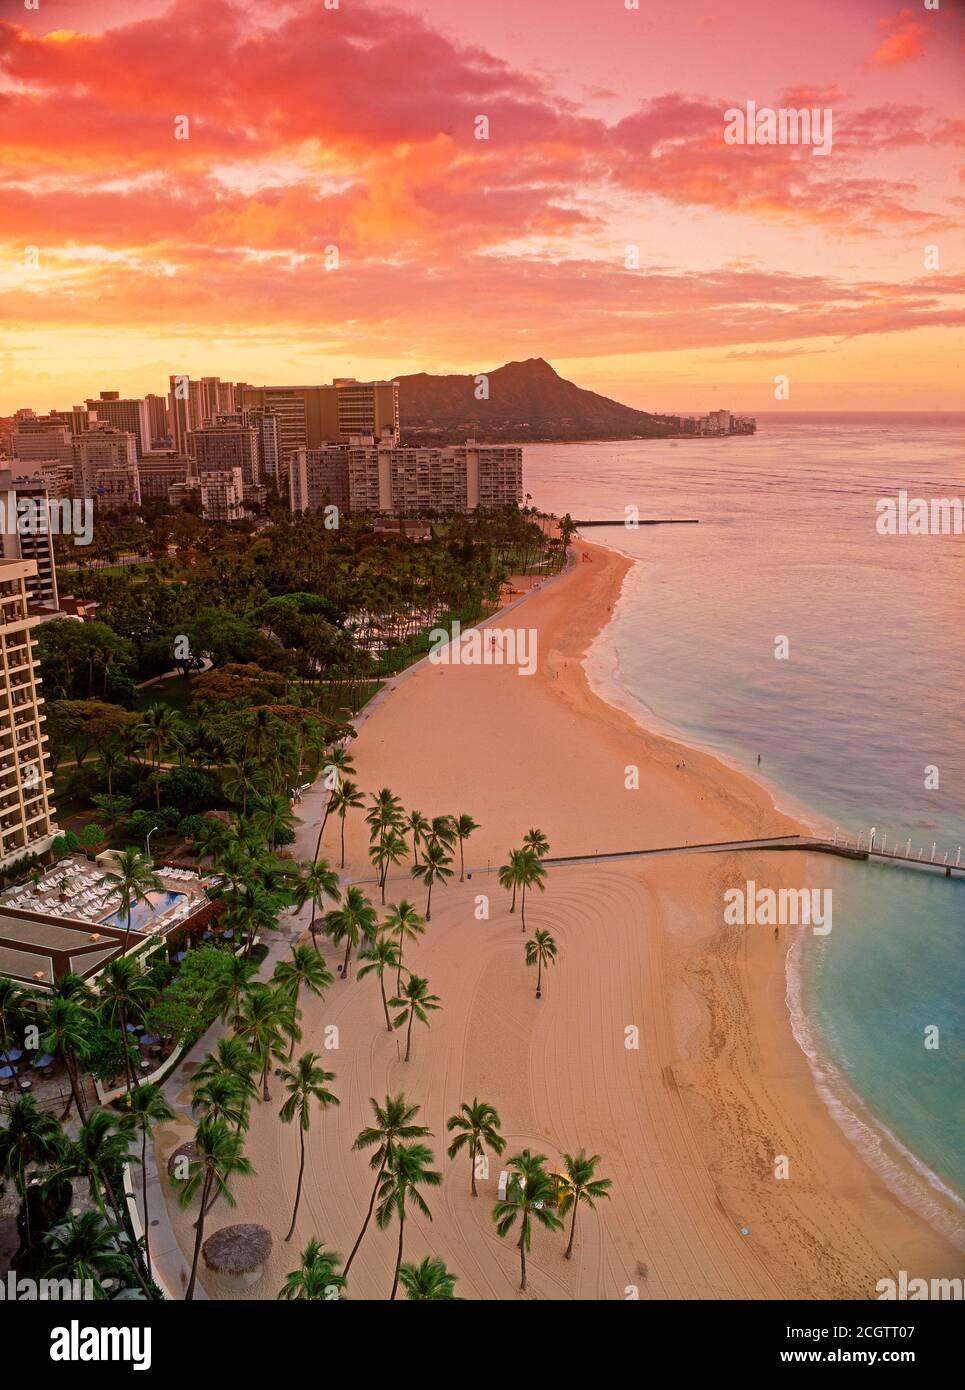 Waikiki Beach et Diamond Head avec des plages, des palmiers et des hôtels au lever du soleil à Honolulu sur l'île d'Oahu Hawaï Banque D'Images